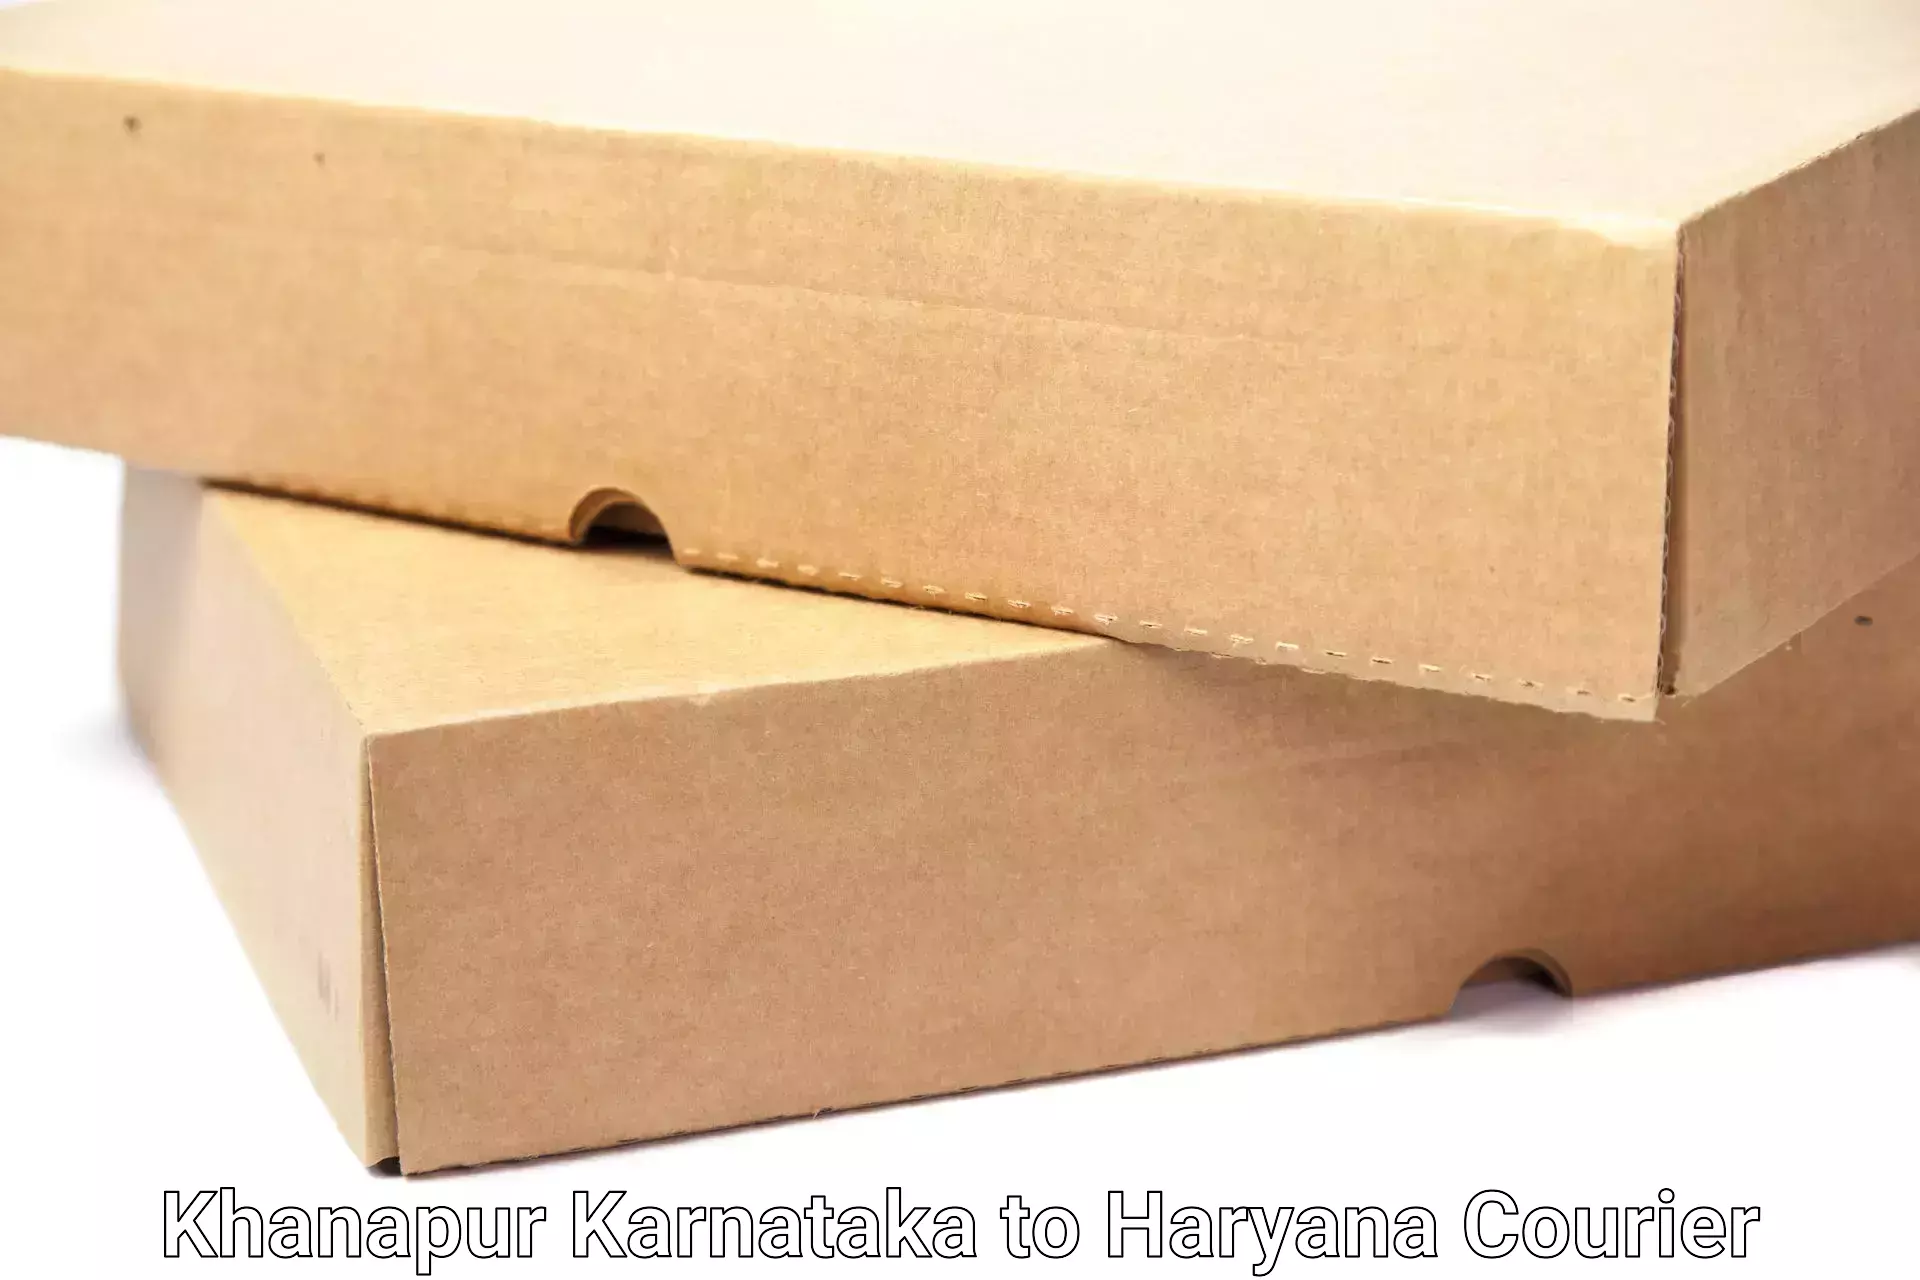 Cost-effective moving solutions Khanapur Karnataka to Chaudhary Charan Singh Haryana Agricultural University Hisar